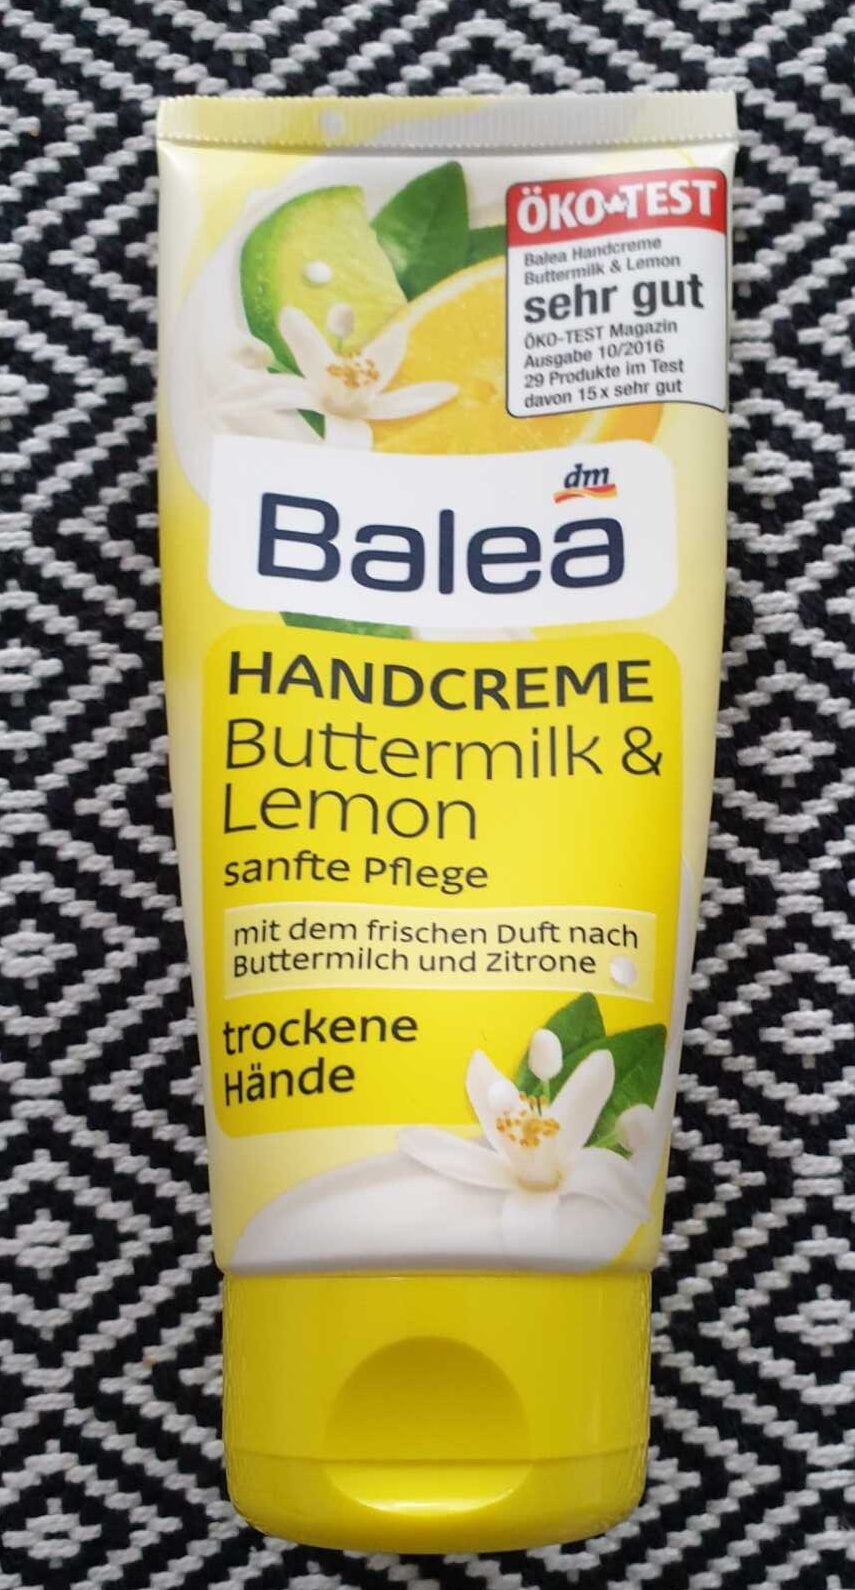 Handcreme Buttermilk & Lemon - Produkt - de